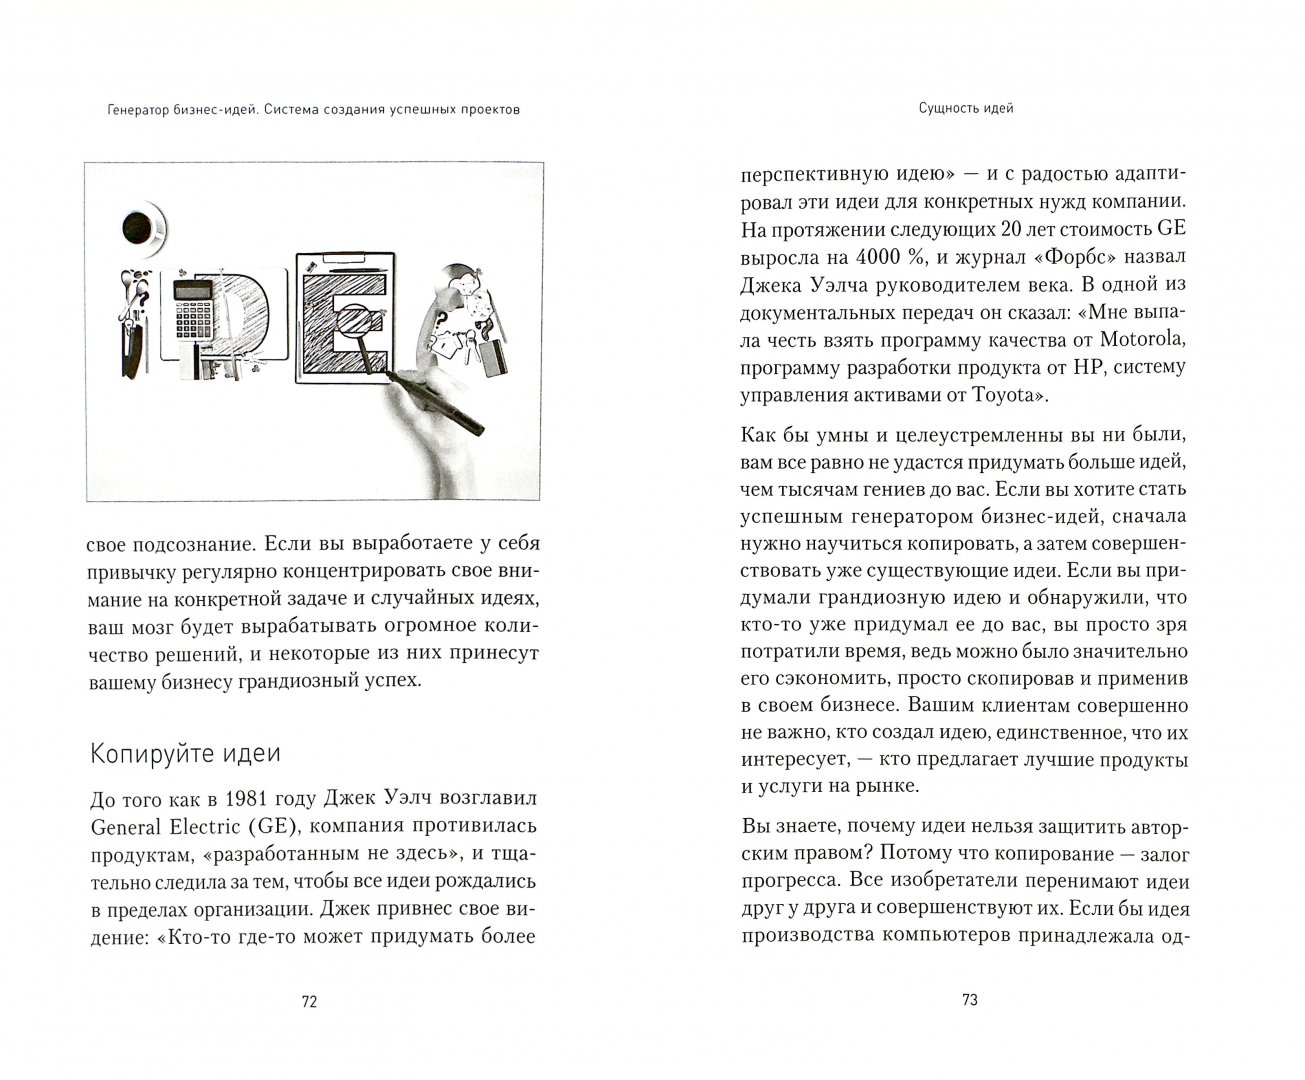 Иллюстрация 1 из 15 для Генератор бизнес-идей.Система создания проектов - Андрей Седнев | Лабиринт - книги. Источник: Лабиринт